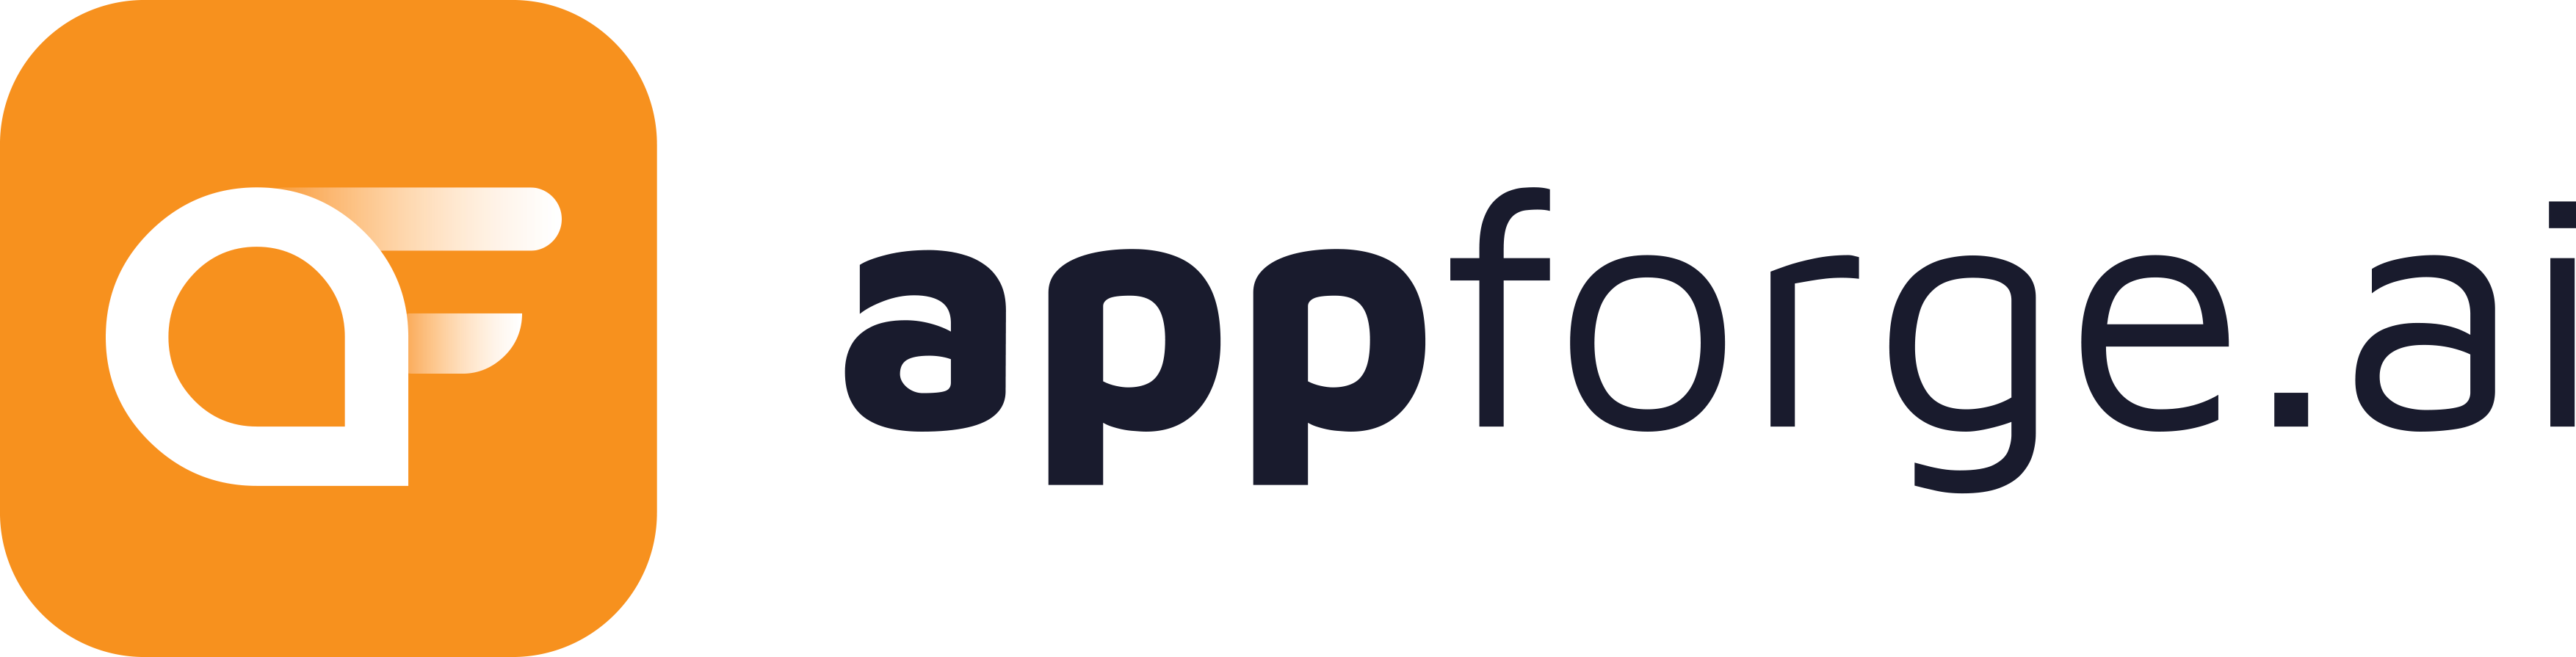 AppForge logo.